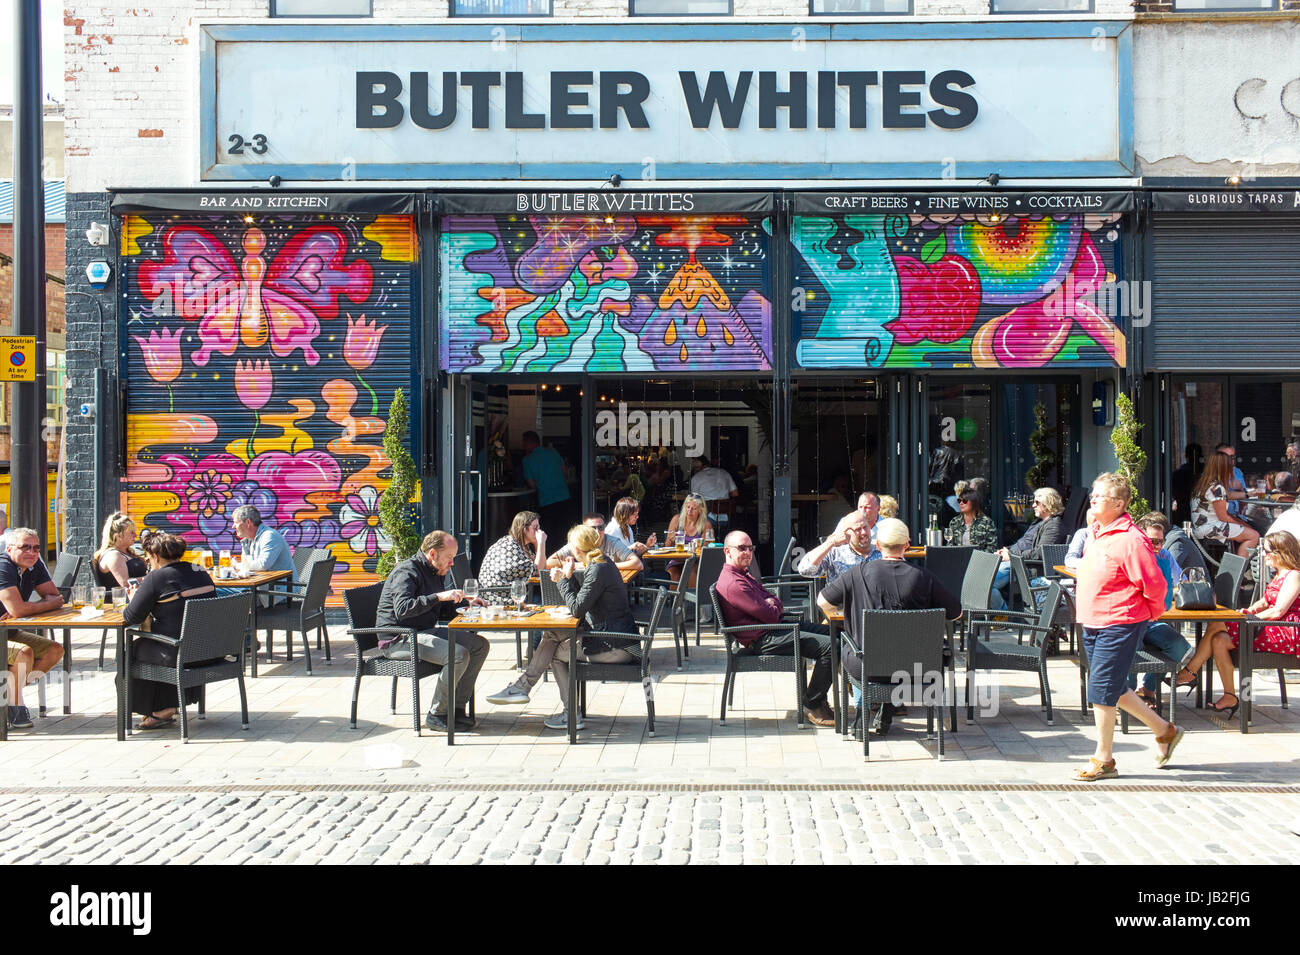 Personas ajenas a los blancos Butler Cafe Restaurant en Humber Street, Hull Foto de stock